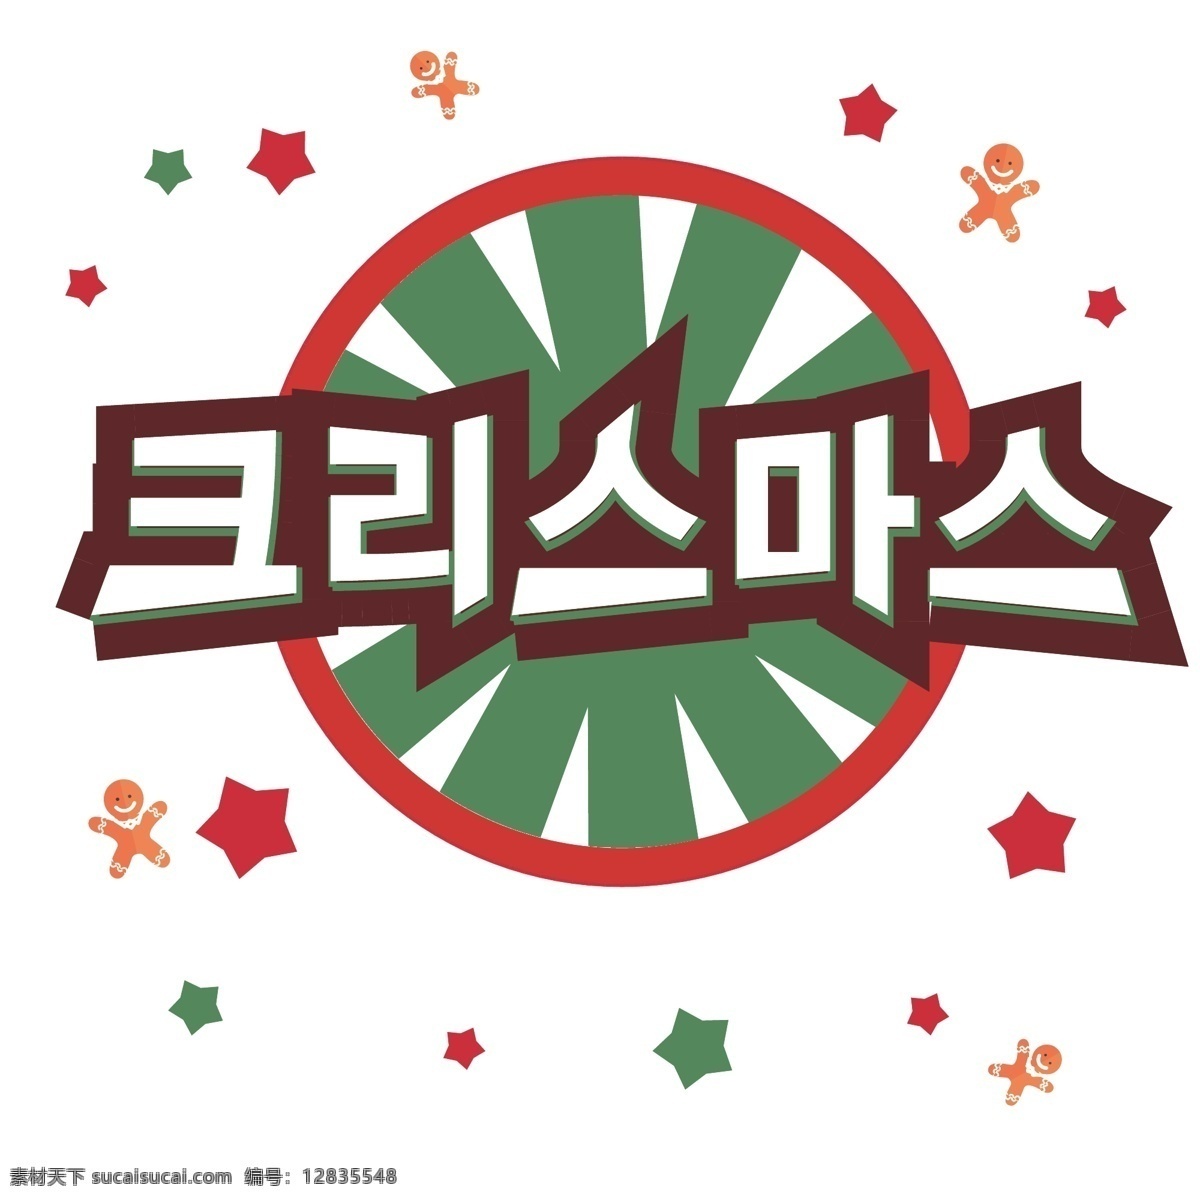 圣诞快乐 圆形 图 装饰 字体 绿色 圣诞节快乐 一个娃娃 圣诞 在字体上 星 红色字体设计